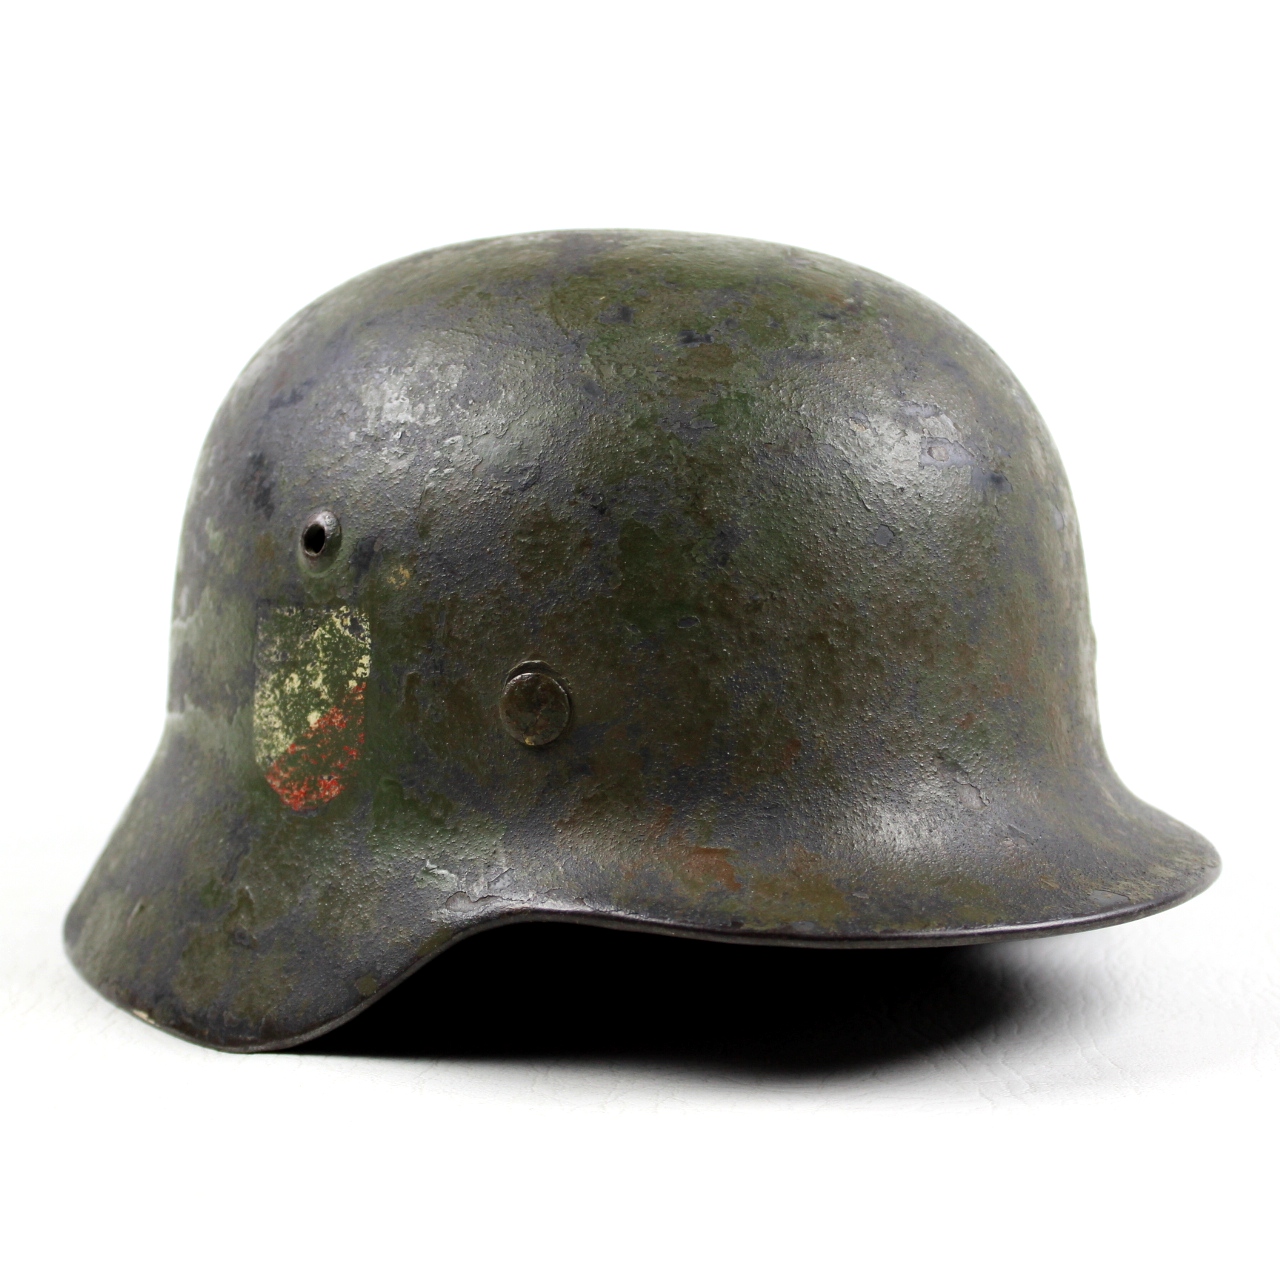 M1940 luftwaffe DD camouflaged helmet